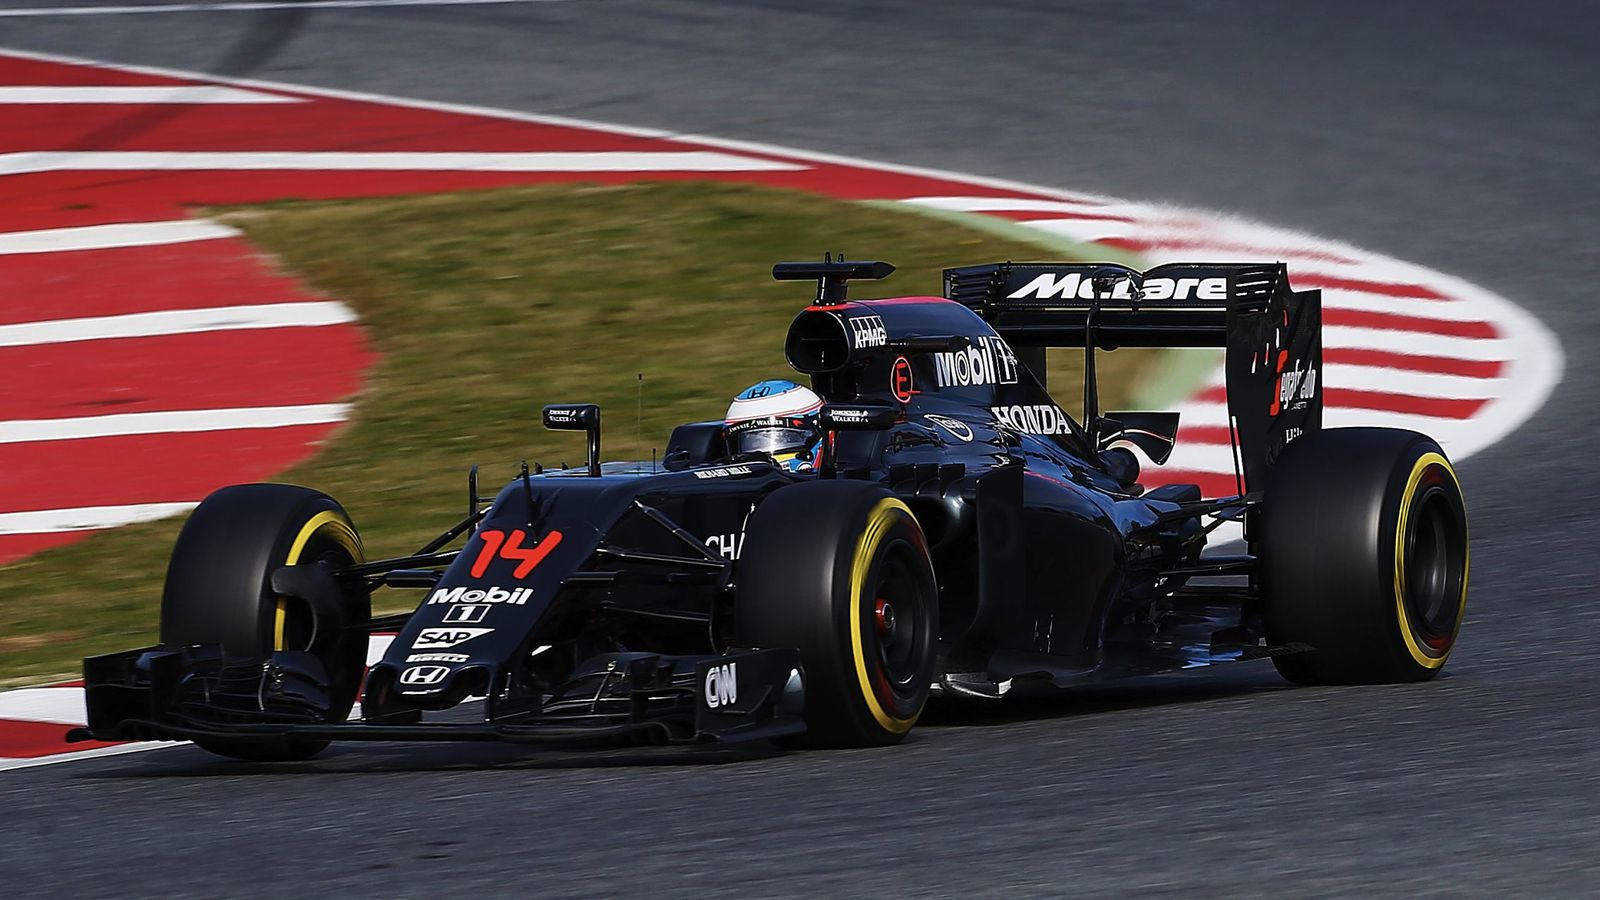 Foto: El McLaren ha completado 710 vueltas en pretemporada (Alejandro García/Efe)